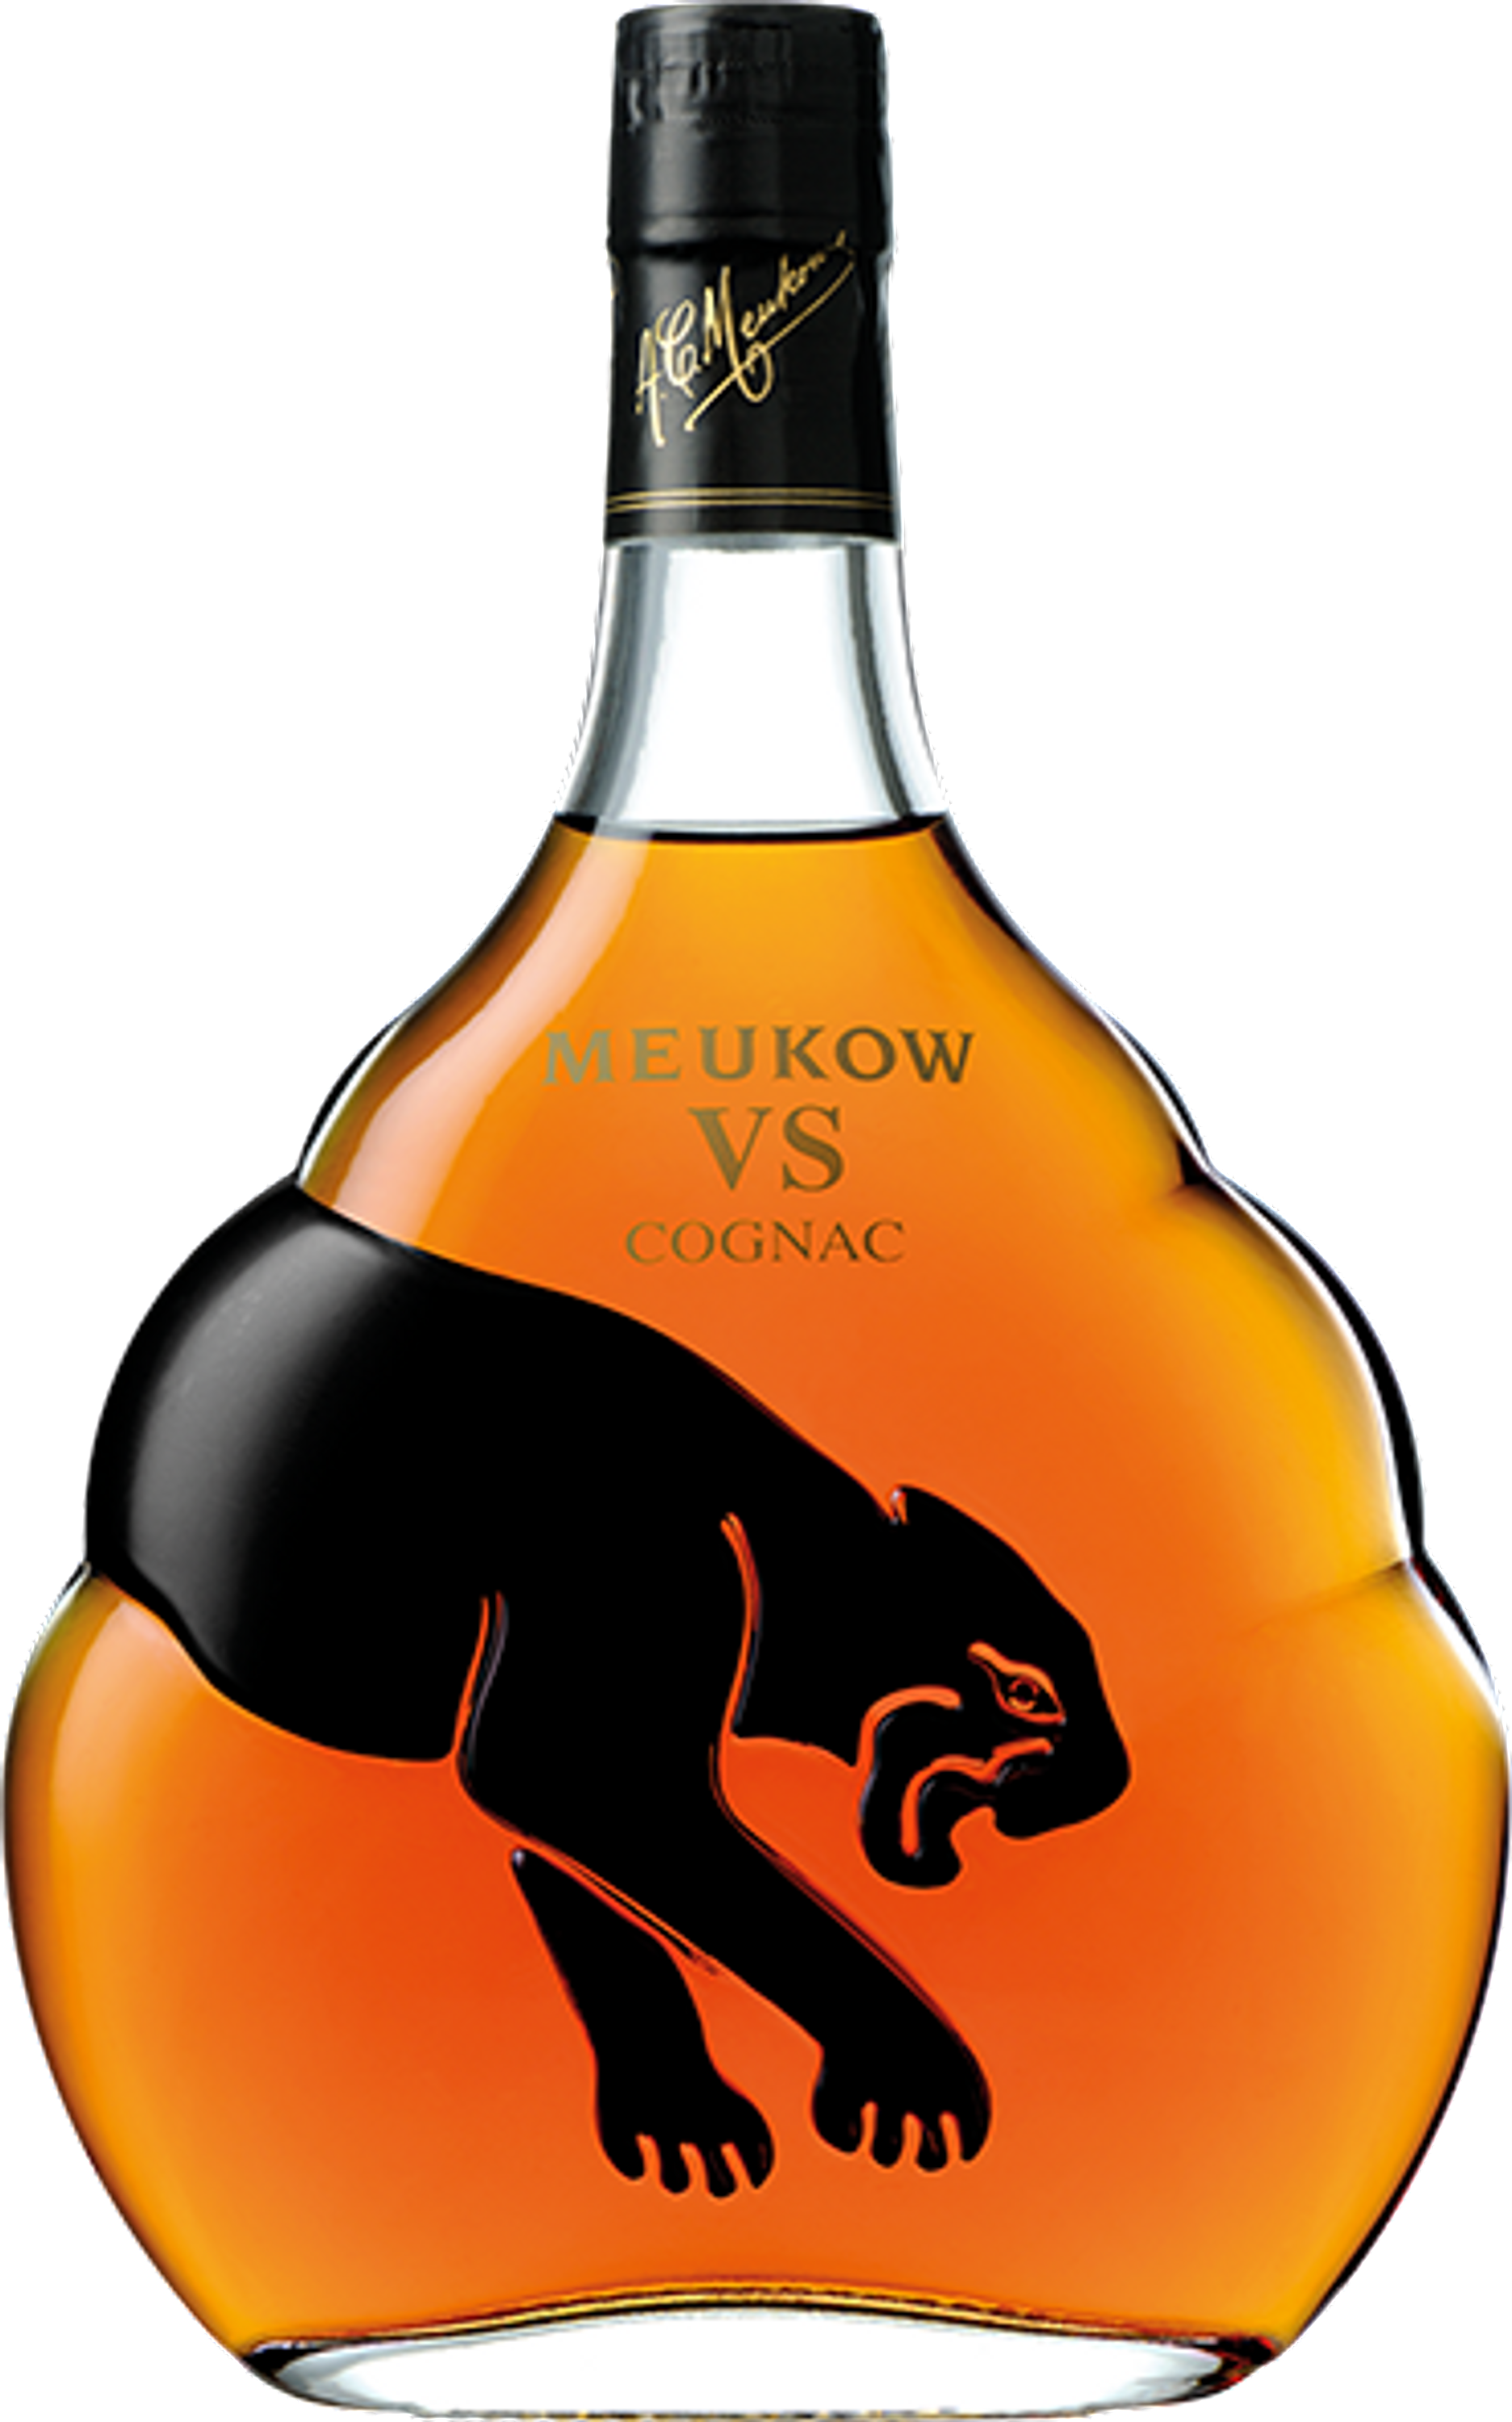 Meukow VS 0.7l, alc. 40% by volume, Cognac France